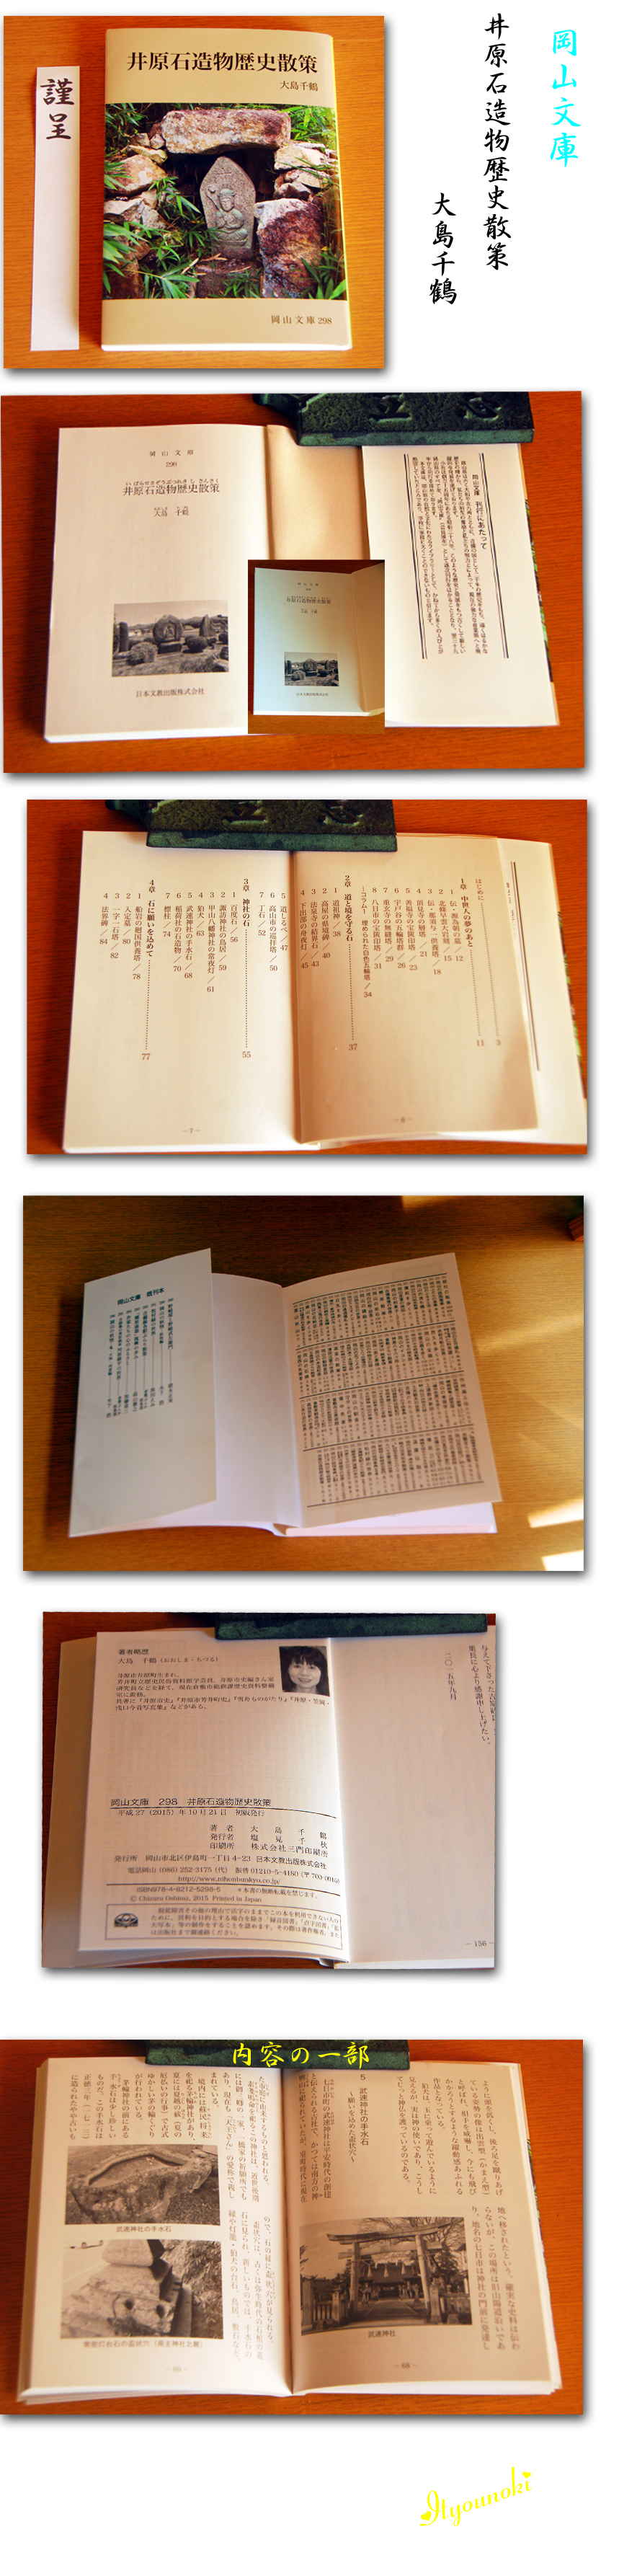 銀杏の樹 一期一会 岡山文庫から大島千鶴著 井原石造物歴史散策 出版されました